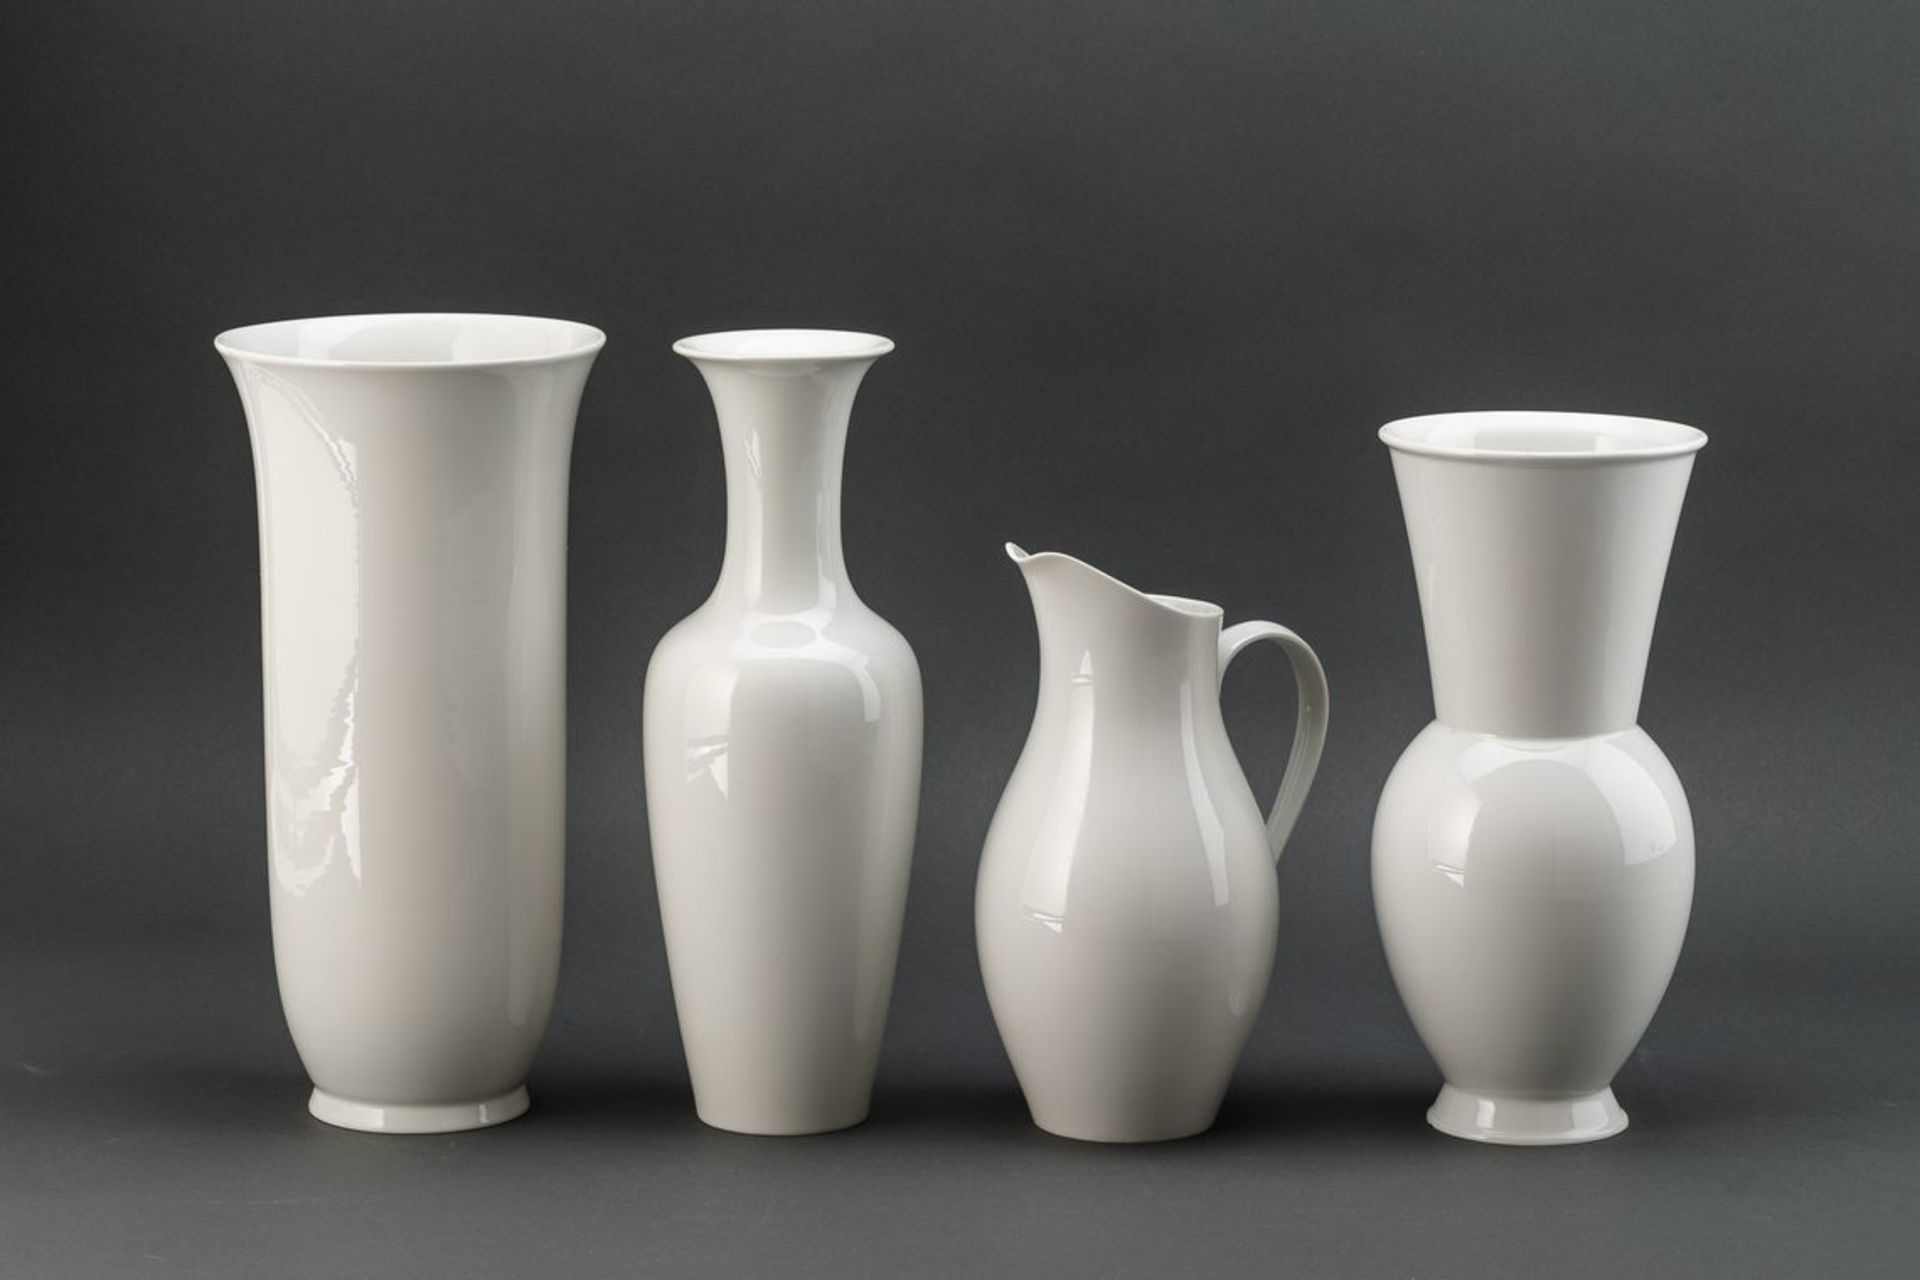 Drei Vasen und ein HenkelkrugWeißporzellan. 1 x Modell Asia groß, Entwurf: Johannes Henke, 1975. 1 x